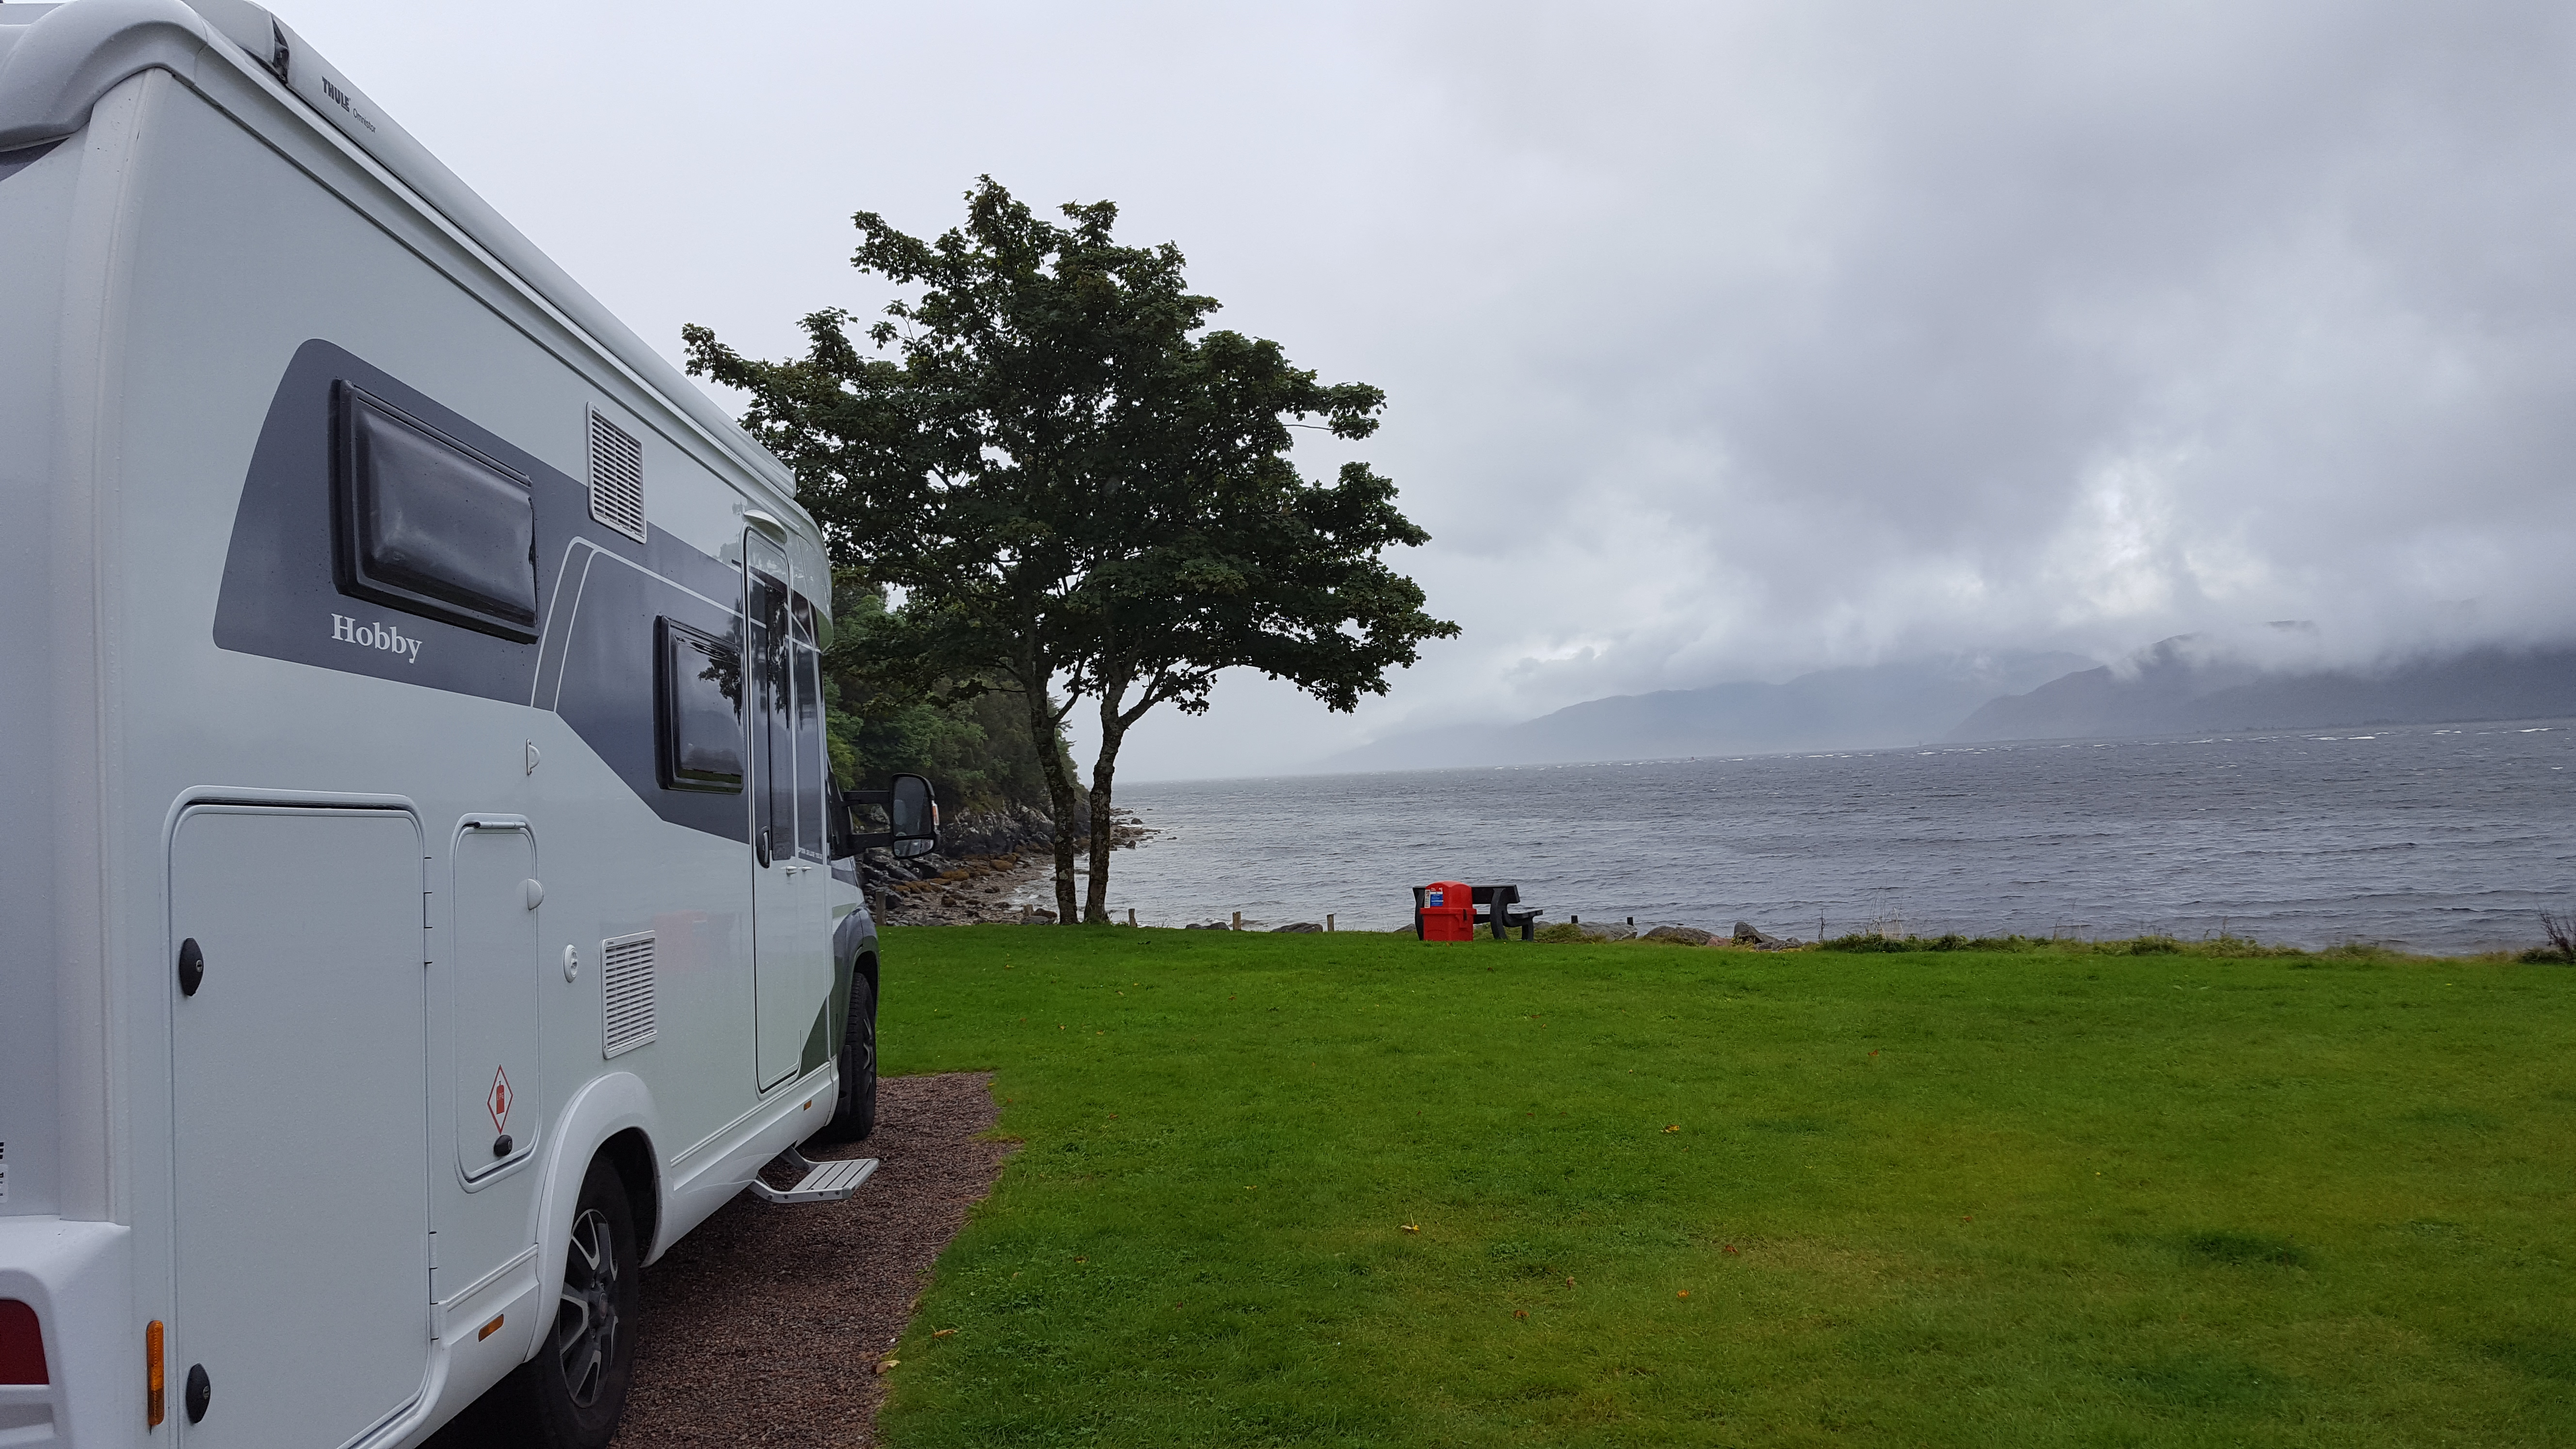 Bunree campsite on Scotland's west coast